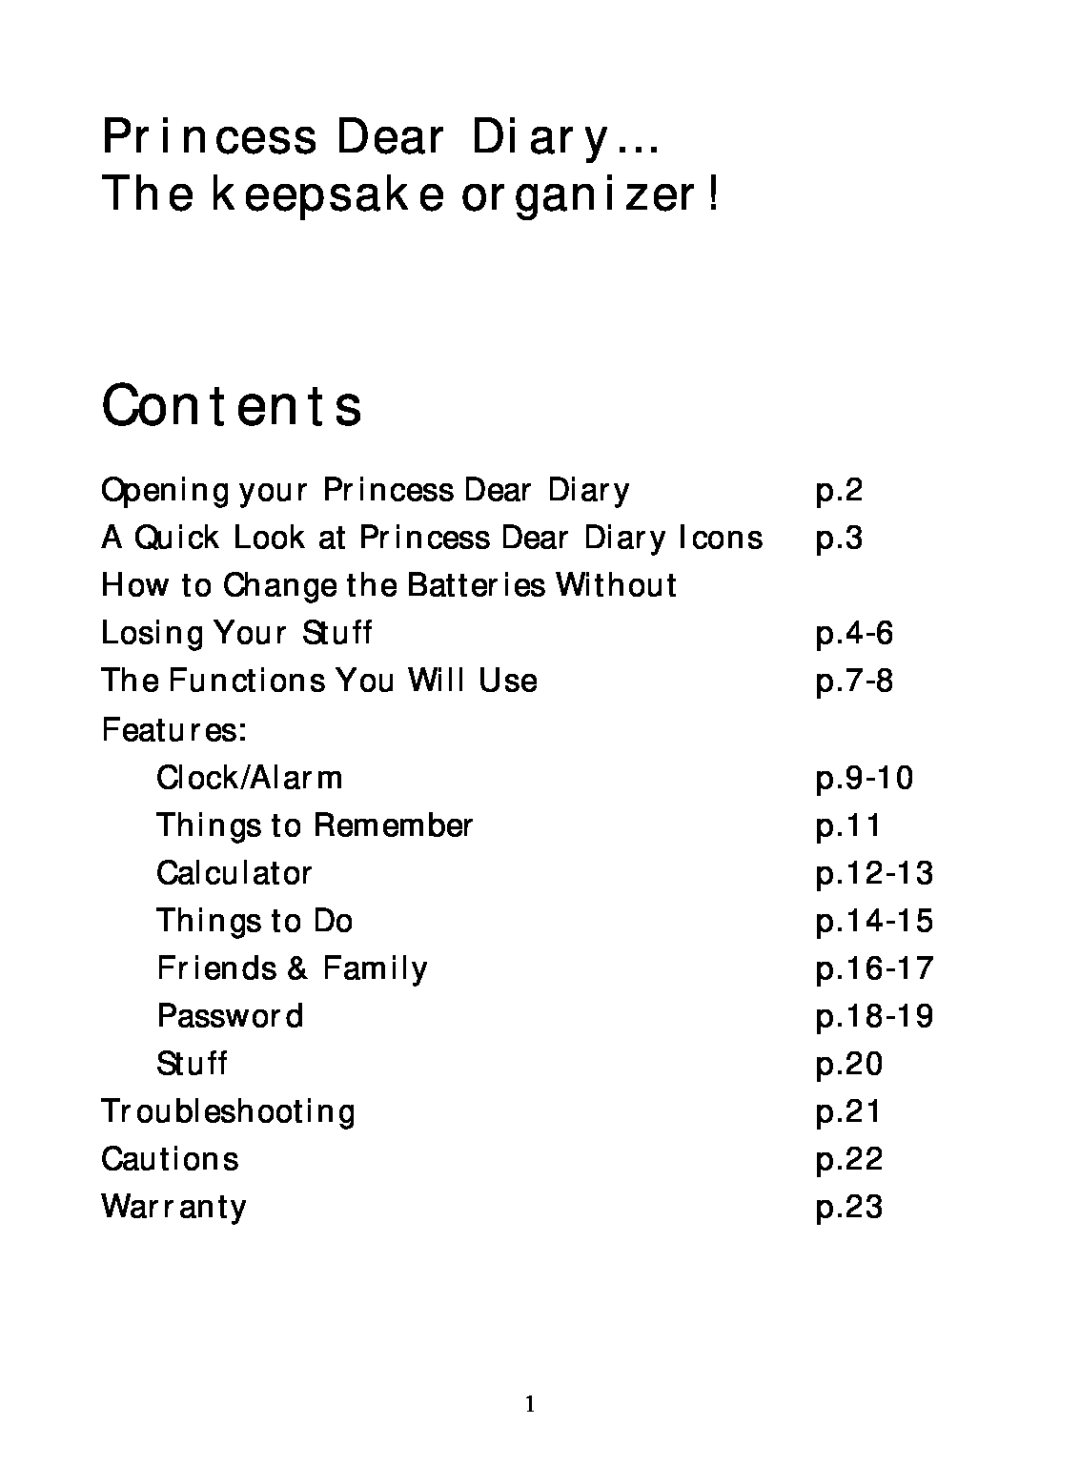 Hasbro 71-554 warranty Contents, Princess Dear Diary The keepsake organizer 